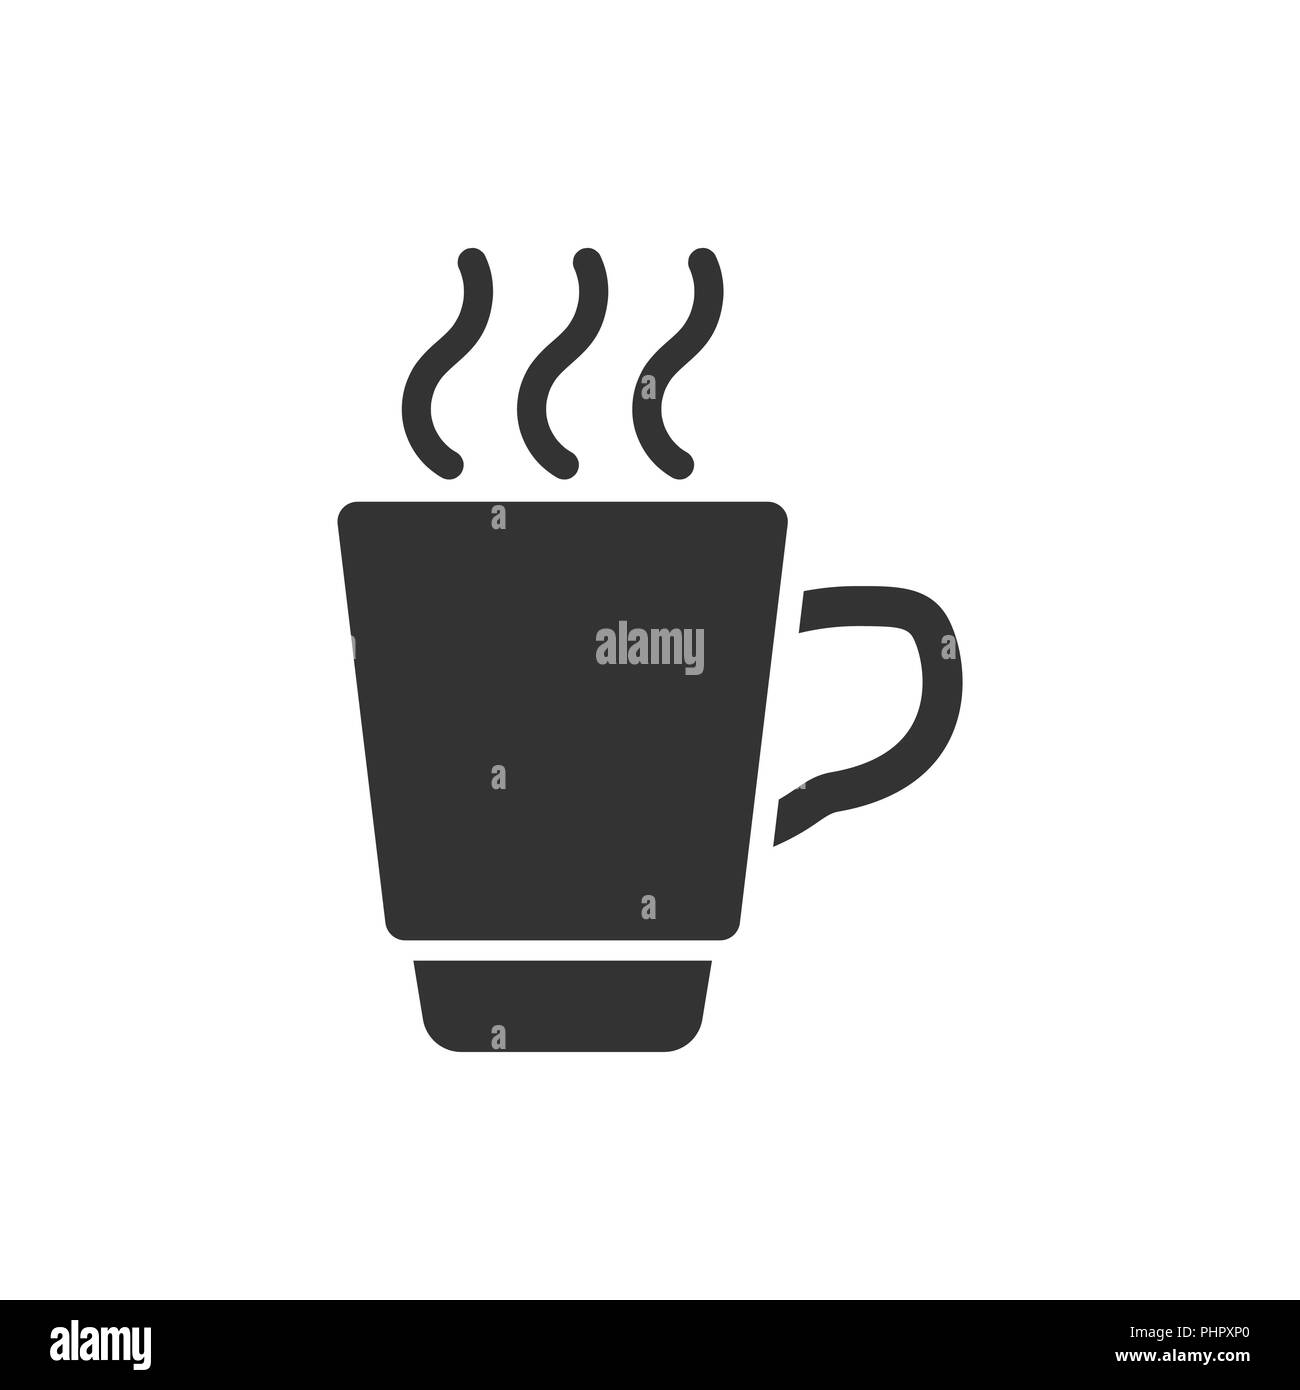 https://c8.alamy.com/compes/phpxp0/el-icono-de-taza-de-cafe-te-en-estilo-plano-taza-de-cafe-ilustracion-vectorial-sobre-fondo-blanco-aisladas-beba-el-concepto-empresarial-phpxp0.jpg